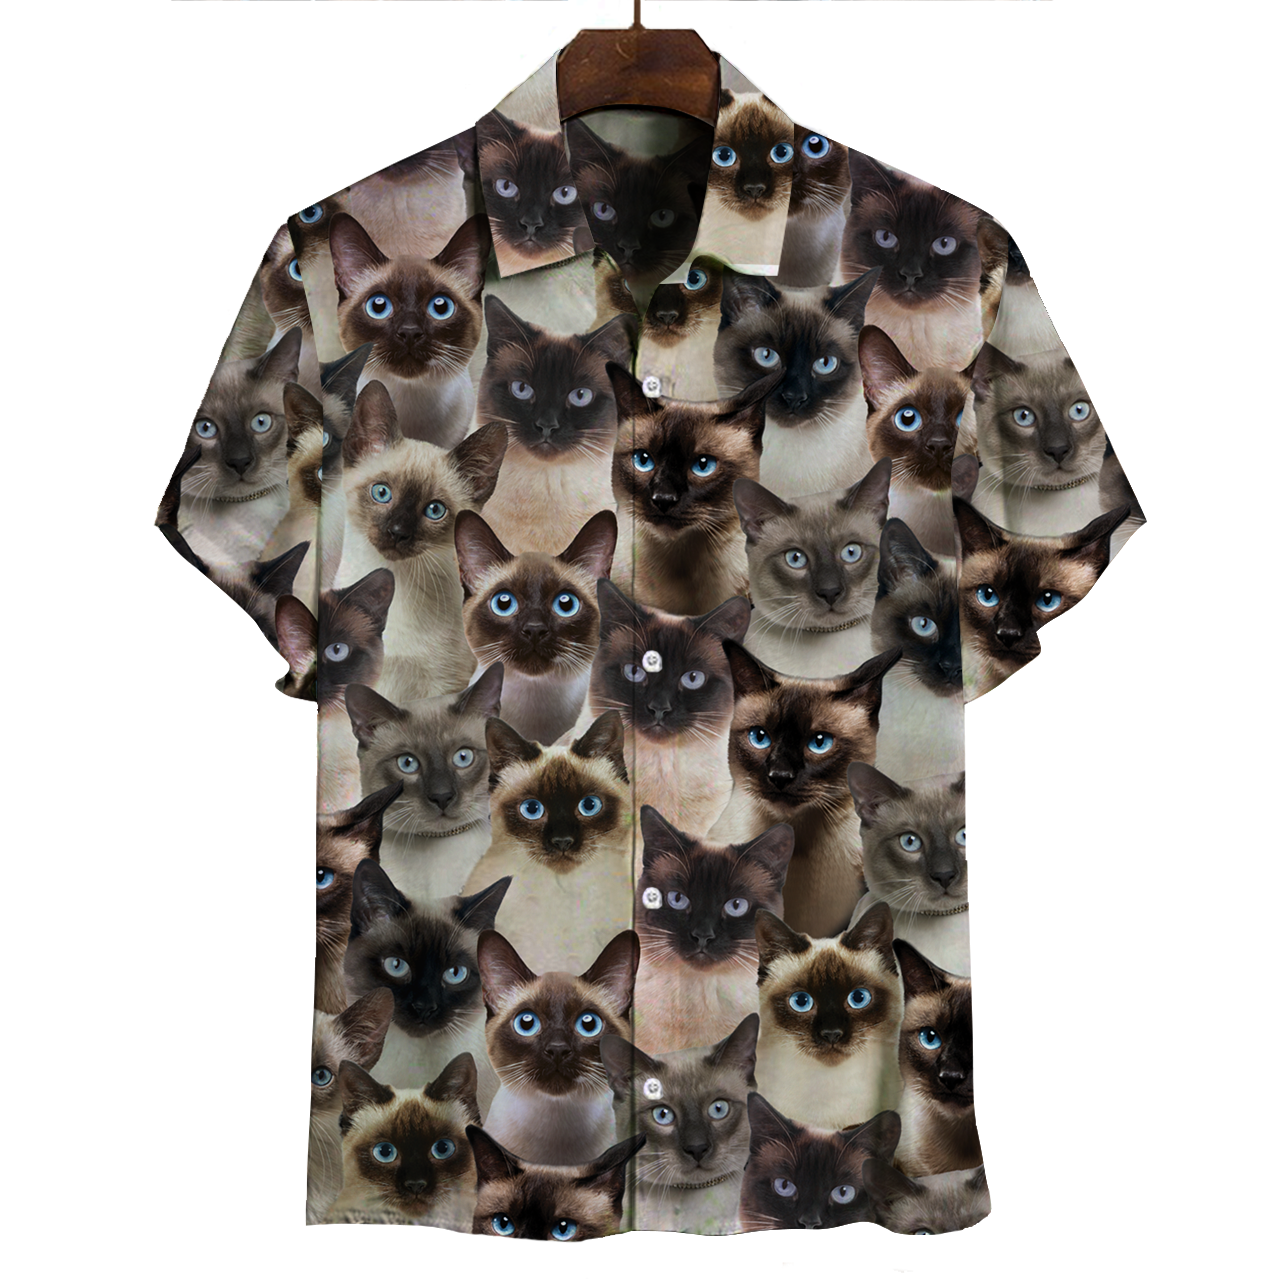 Sie werden einen Haufen siamesischer Katzen haben - Shirt V1